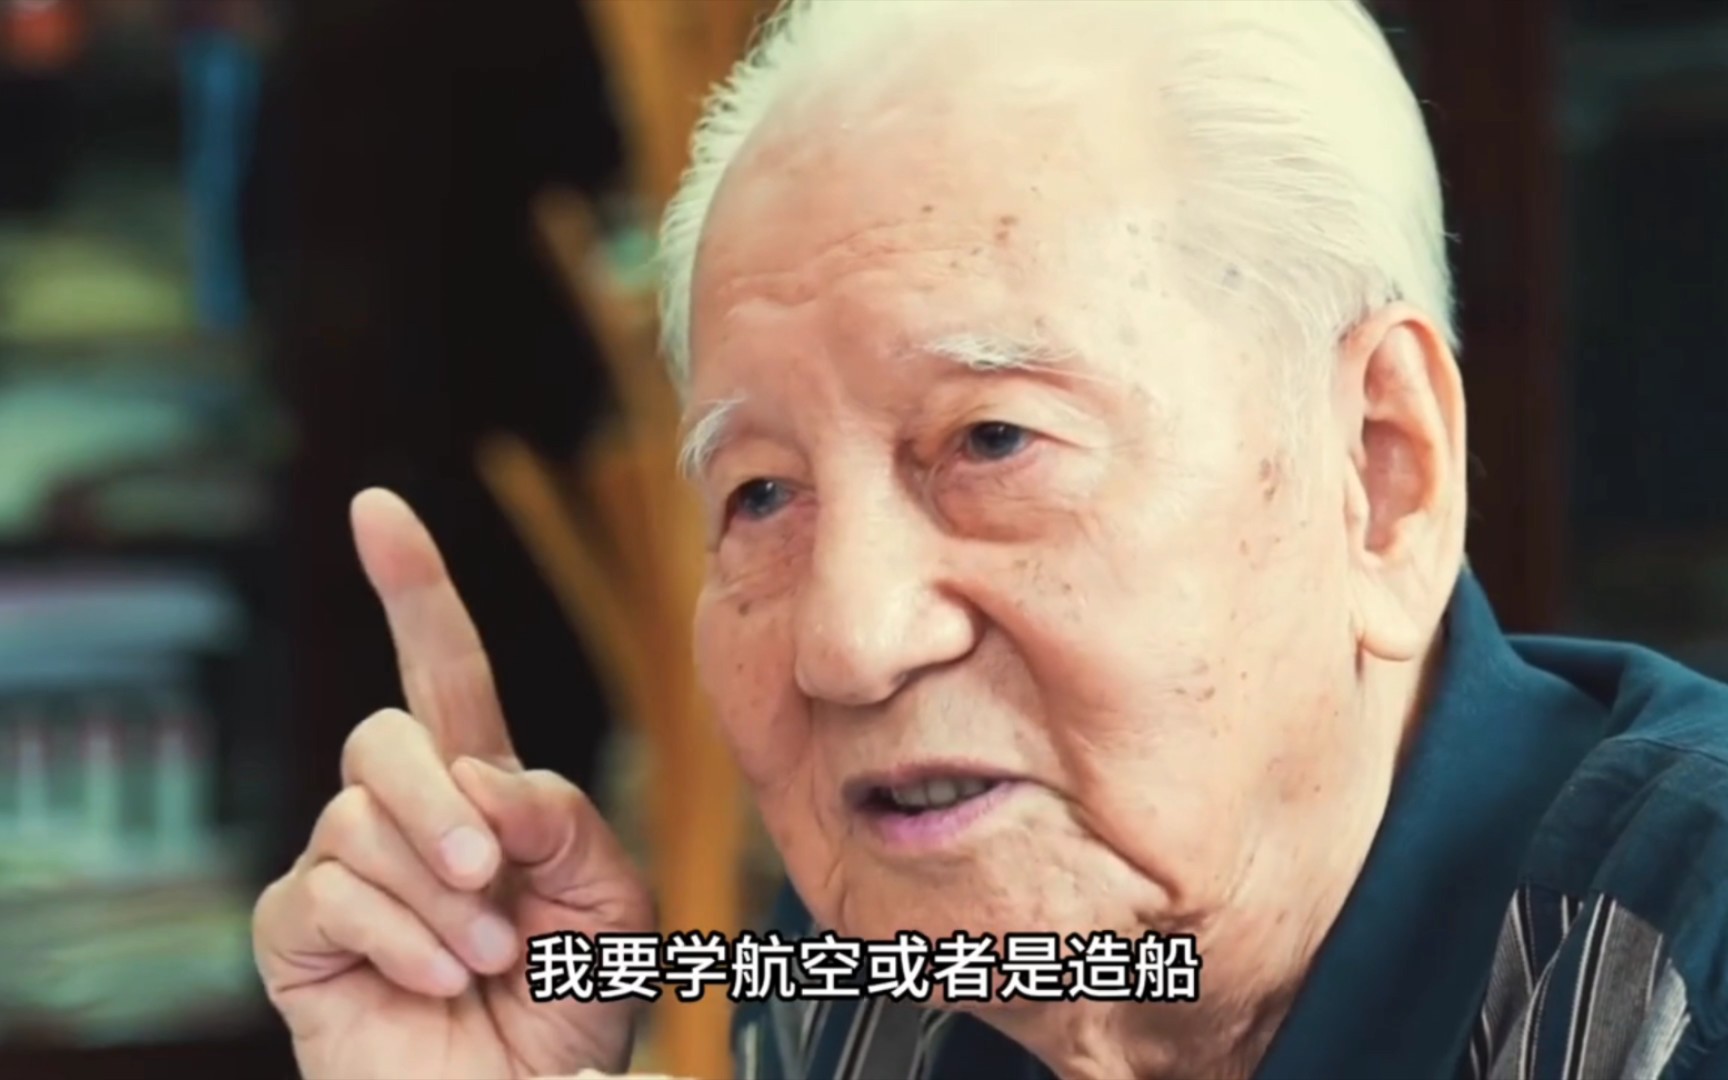 核潜艇之父黄旭华:隐姓埋名30年,父亲至死不知他在干什么